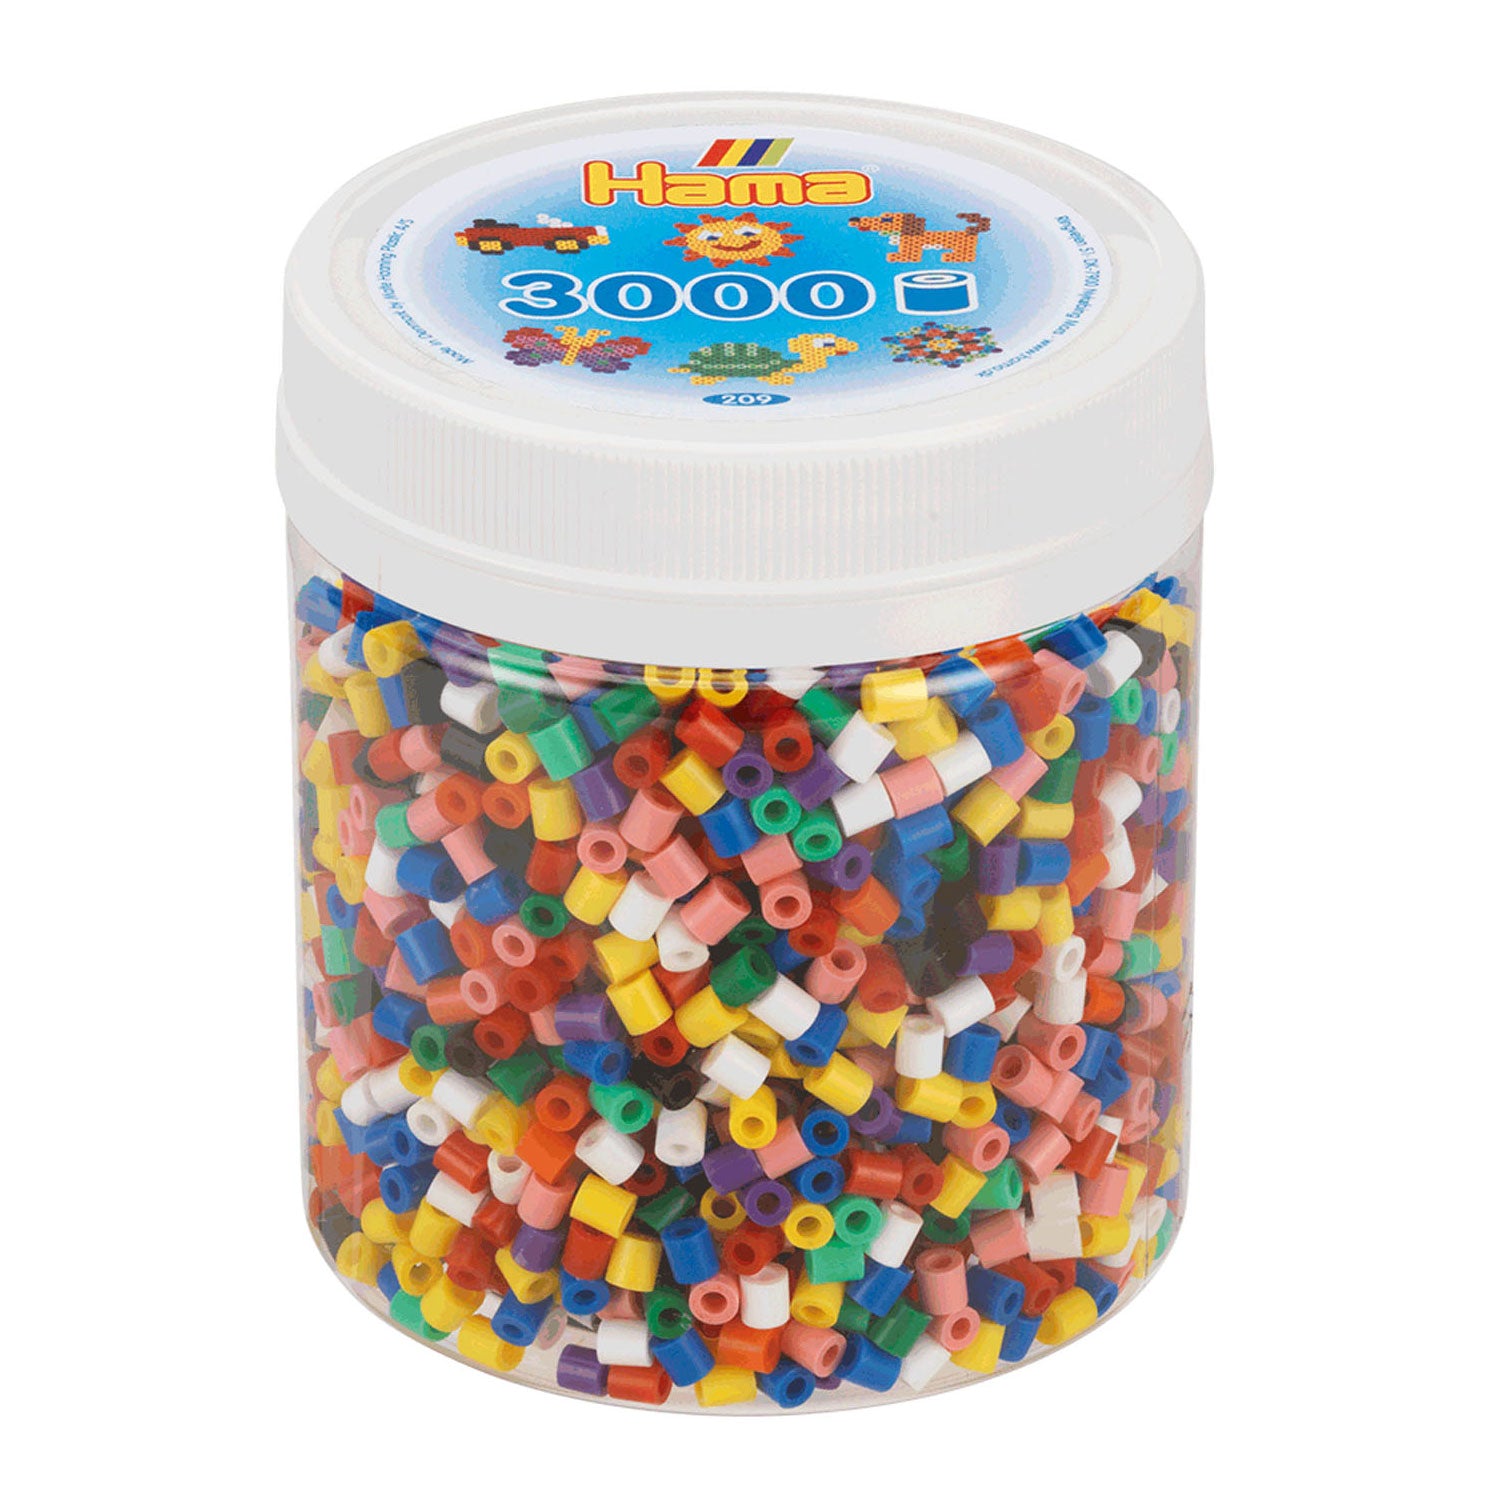 Hama 209-00 - Perlen, Dose mit 3000 Midi-Perlen, Bügelperlen, Volltonmix 10 Farben